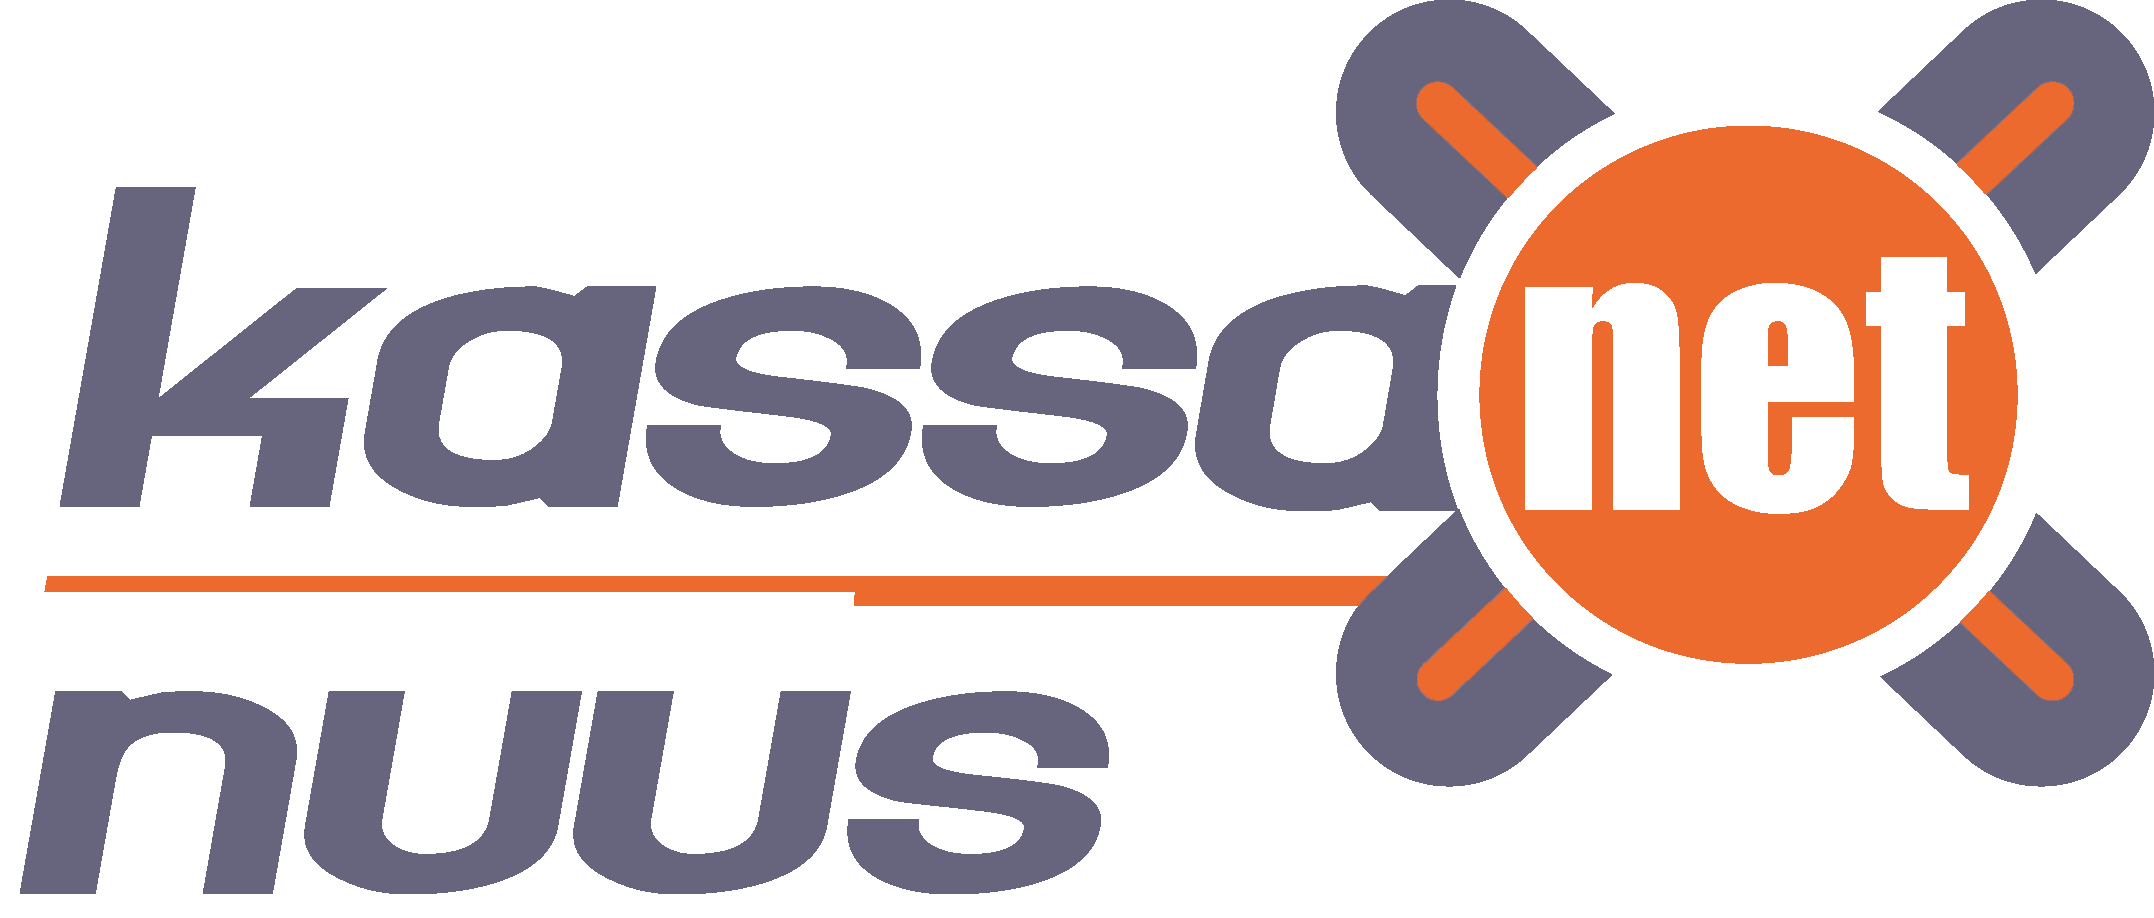 KassaNet Nuus levert resultaat gerichte, innovatieve, afrekensystemen aan ondernemers met visie icon